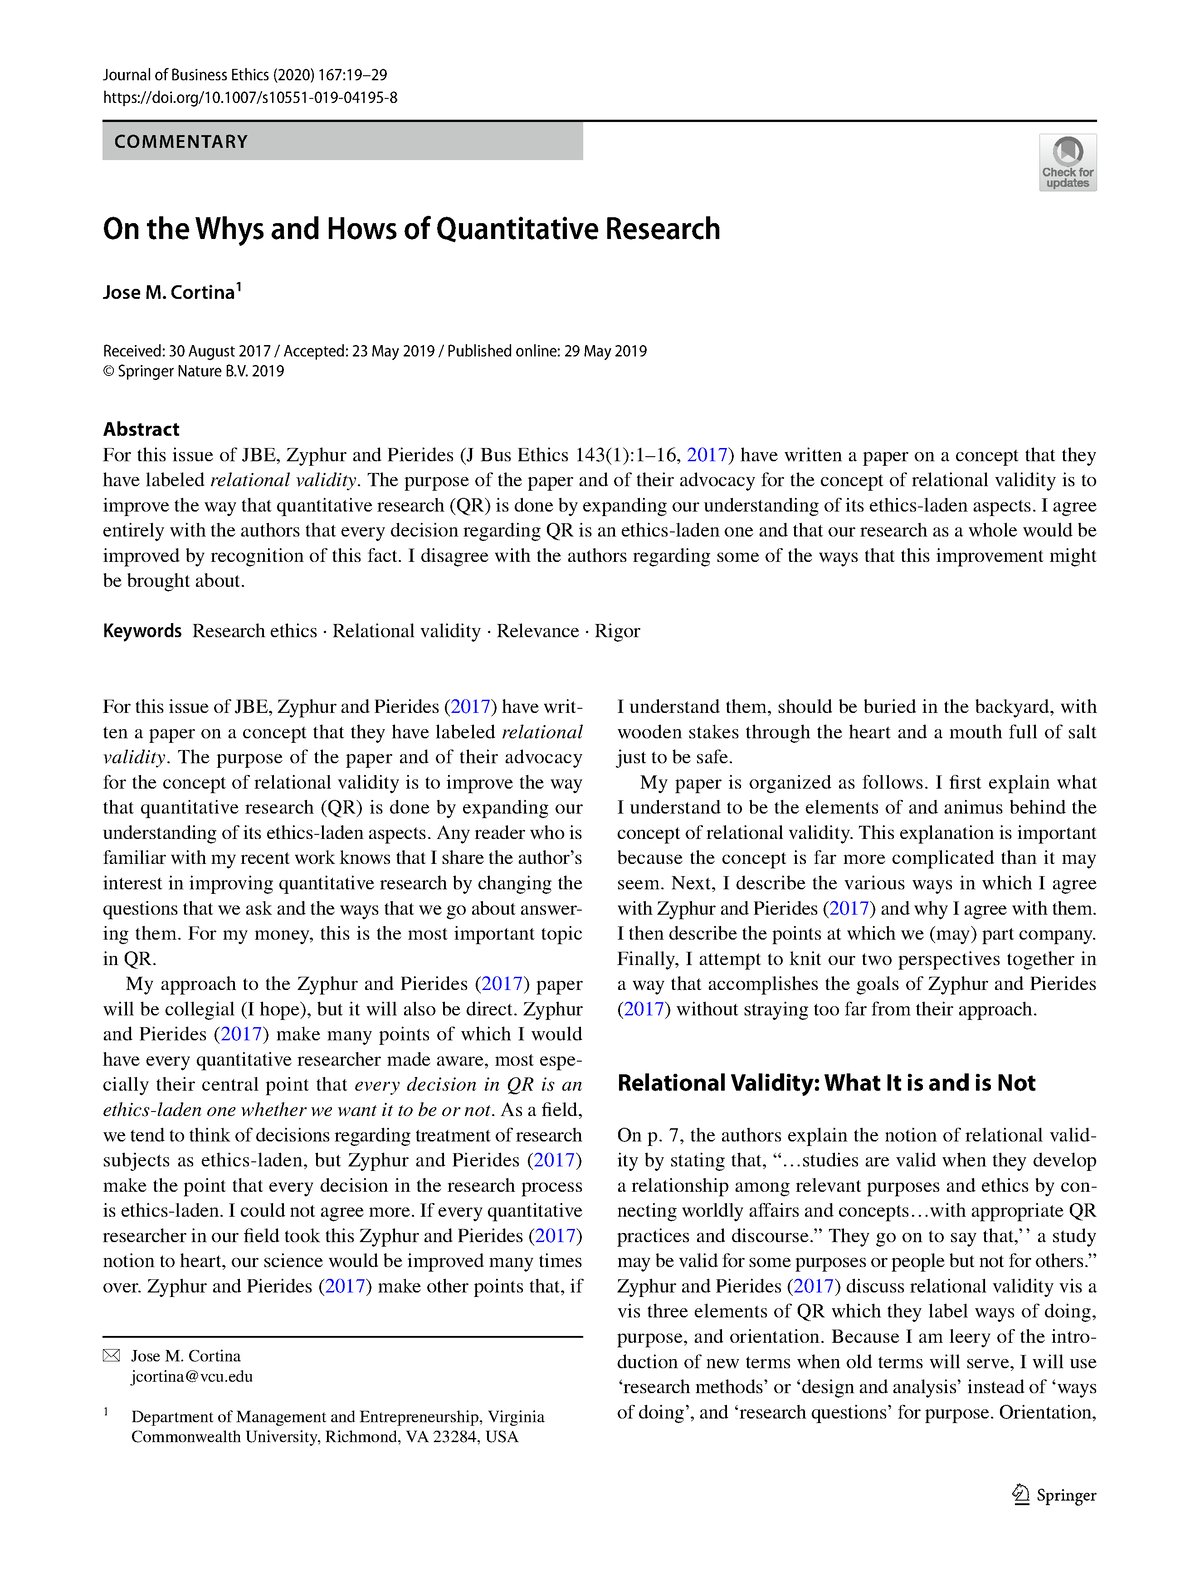 quantitative research ethics